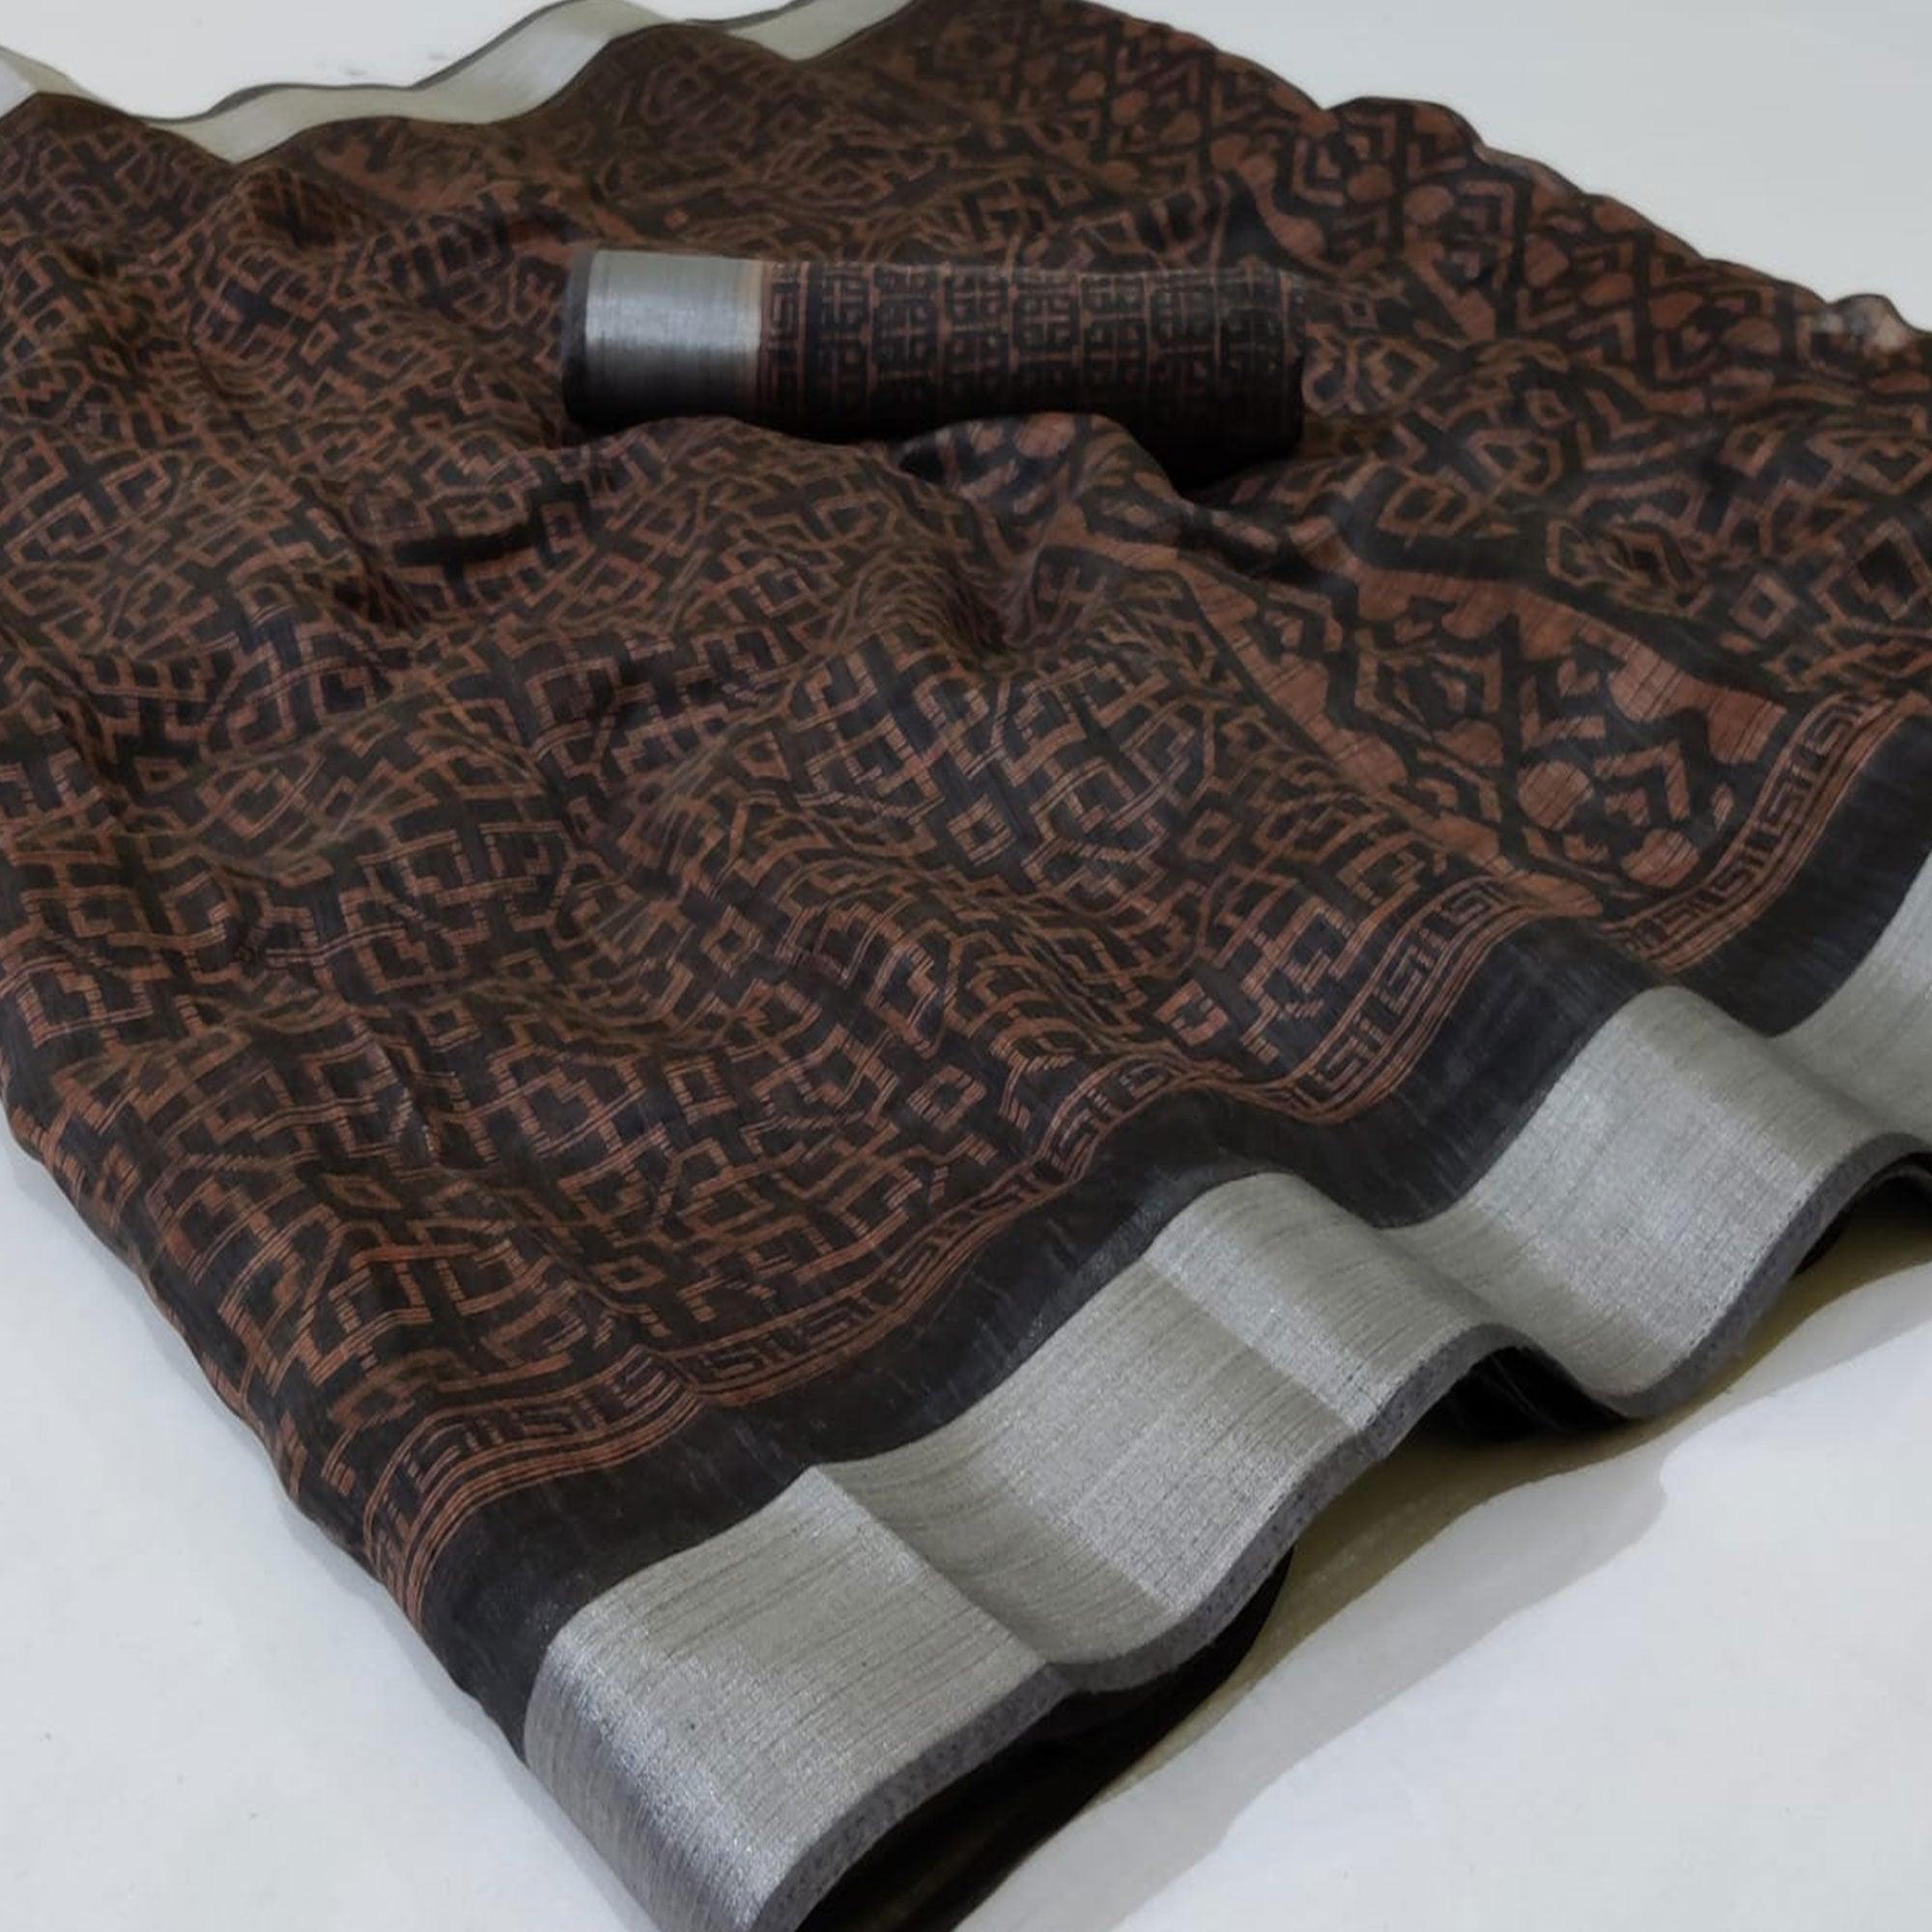 Black Casual Wear Mill Printed Linen Cotton Saree With Silver Zari Border - Peachmode